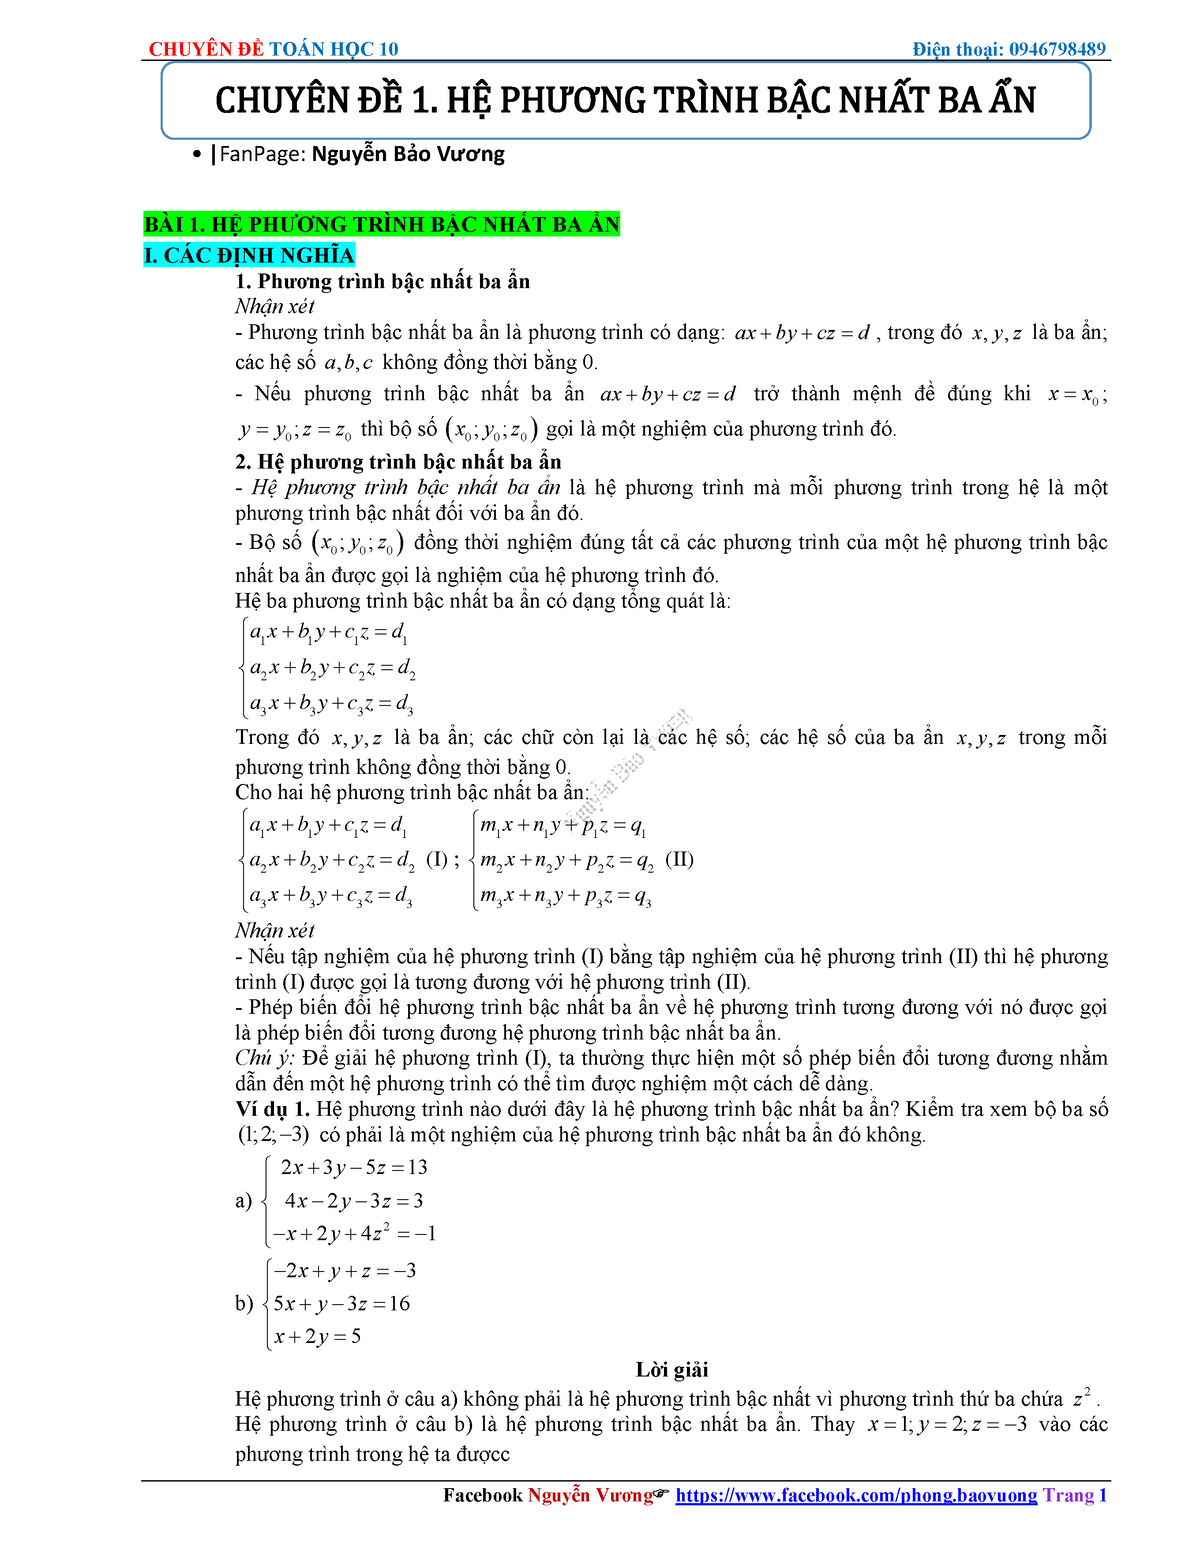 Làm thế nào để giải phương trình bậc nhất ba ẩn bằng phương pháp Gauss?
